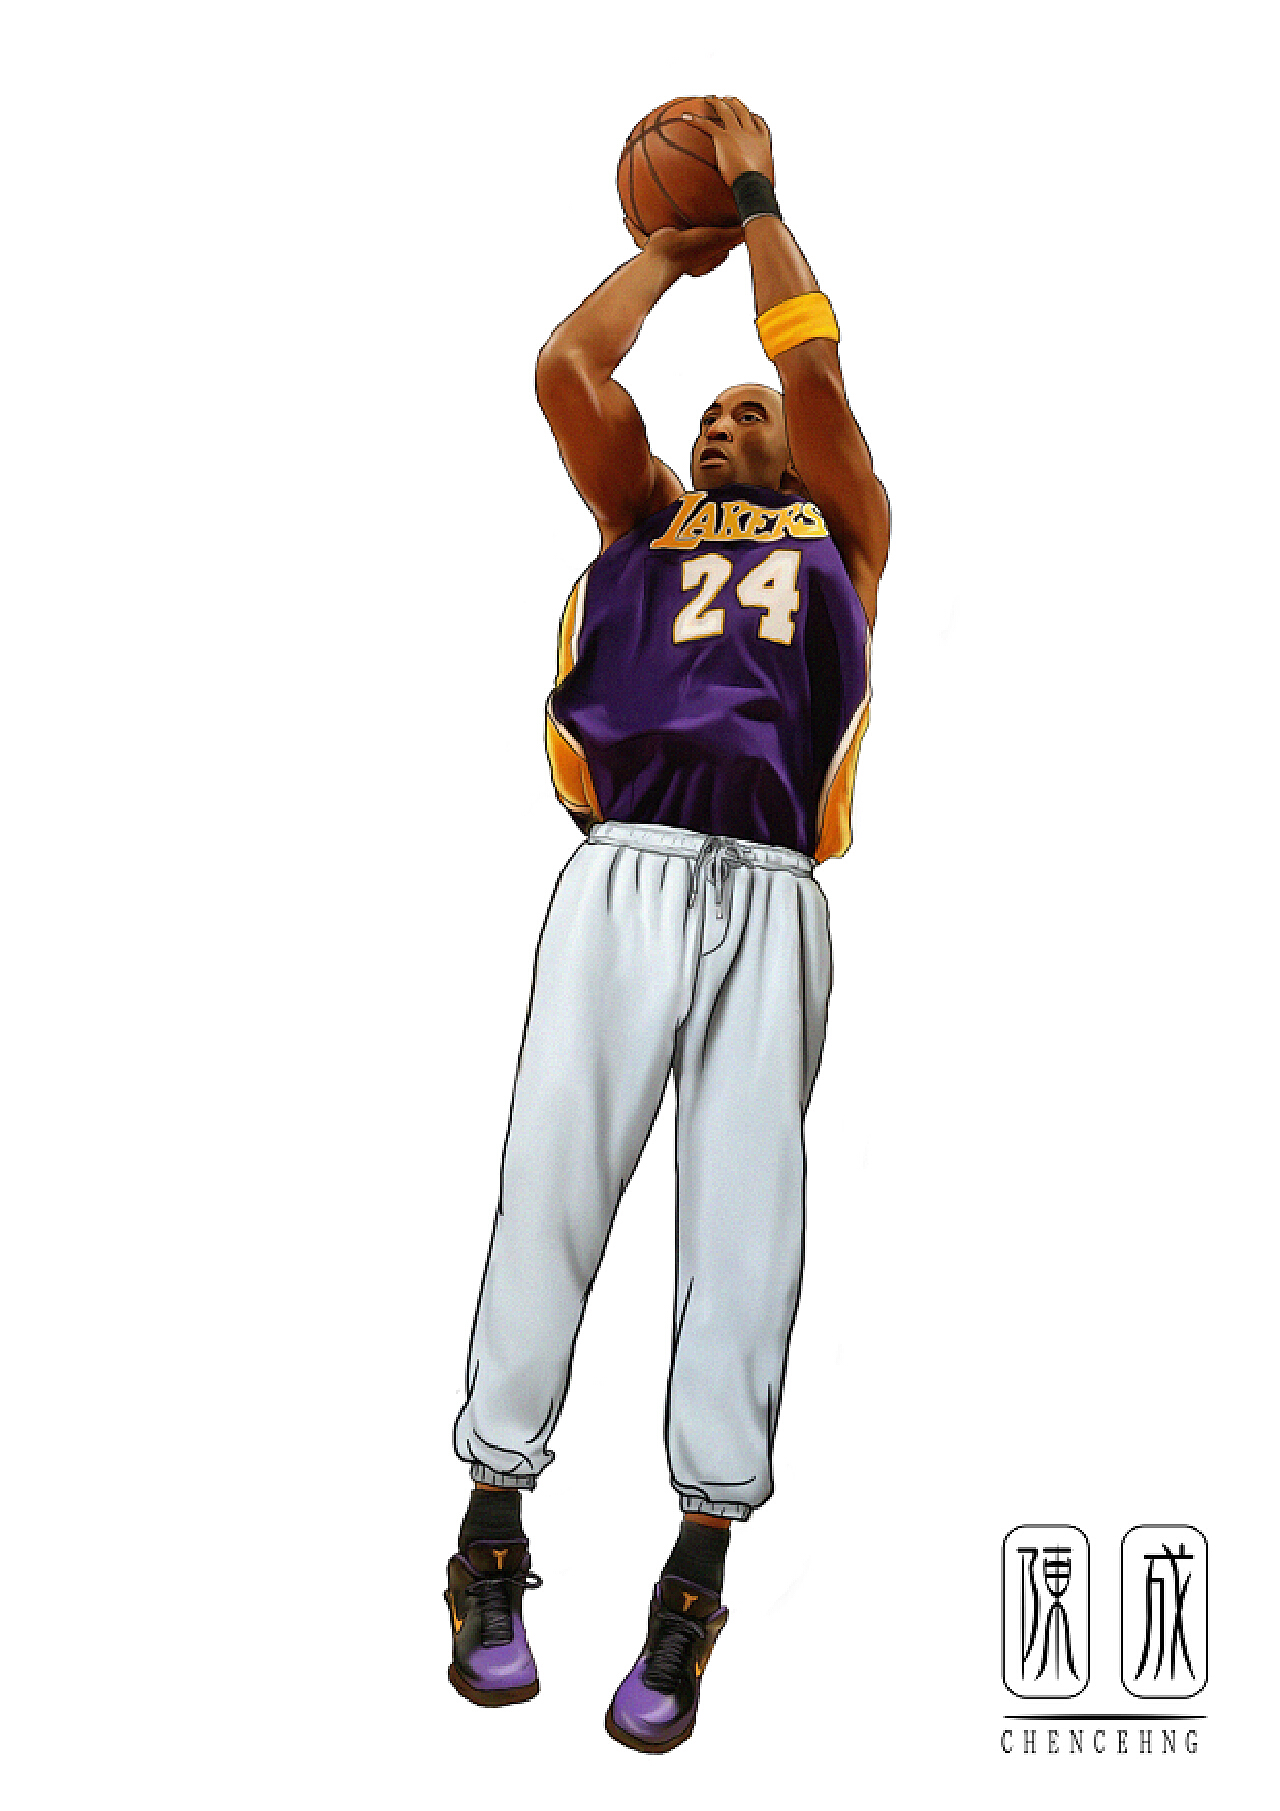 体育NBA湖人队科比跳投高清壁纸_图片编号67379-壁纸网